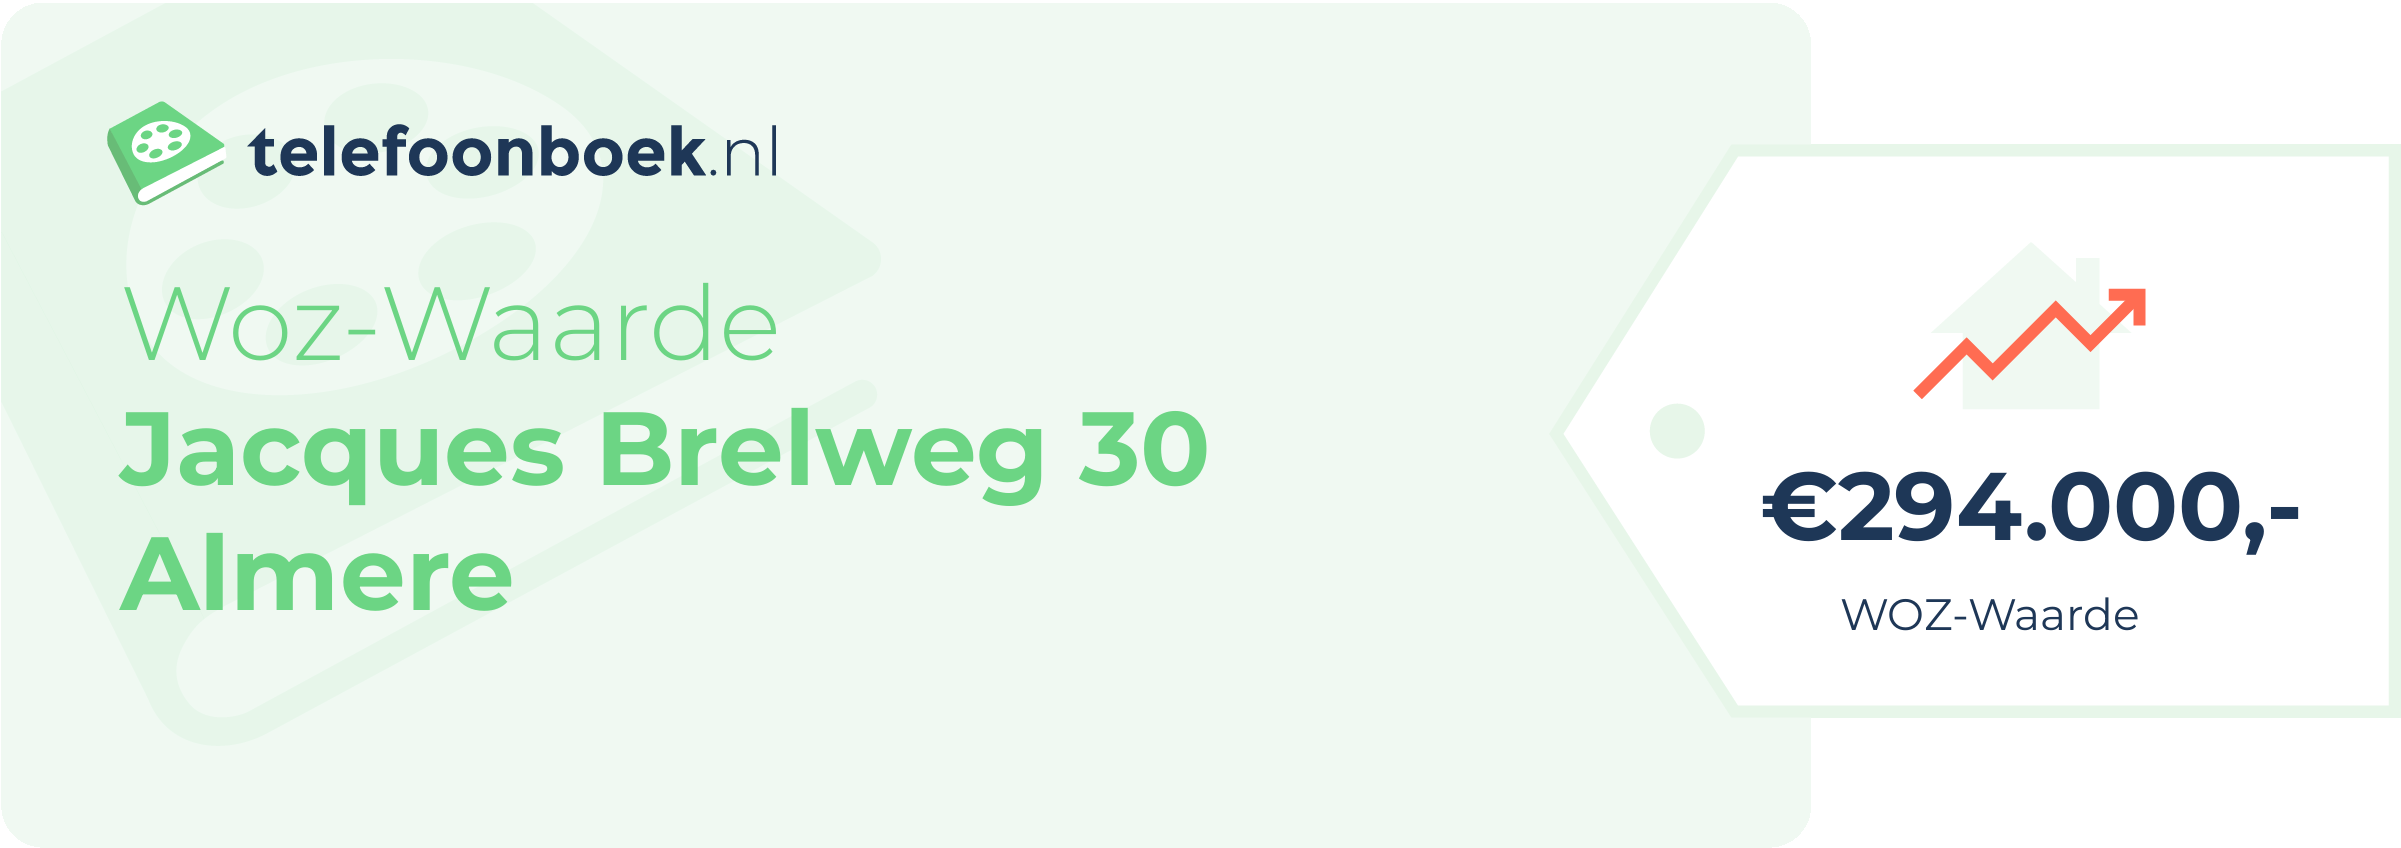 WOZ-waarde Jacques Brelweg 30 Almere